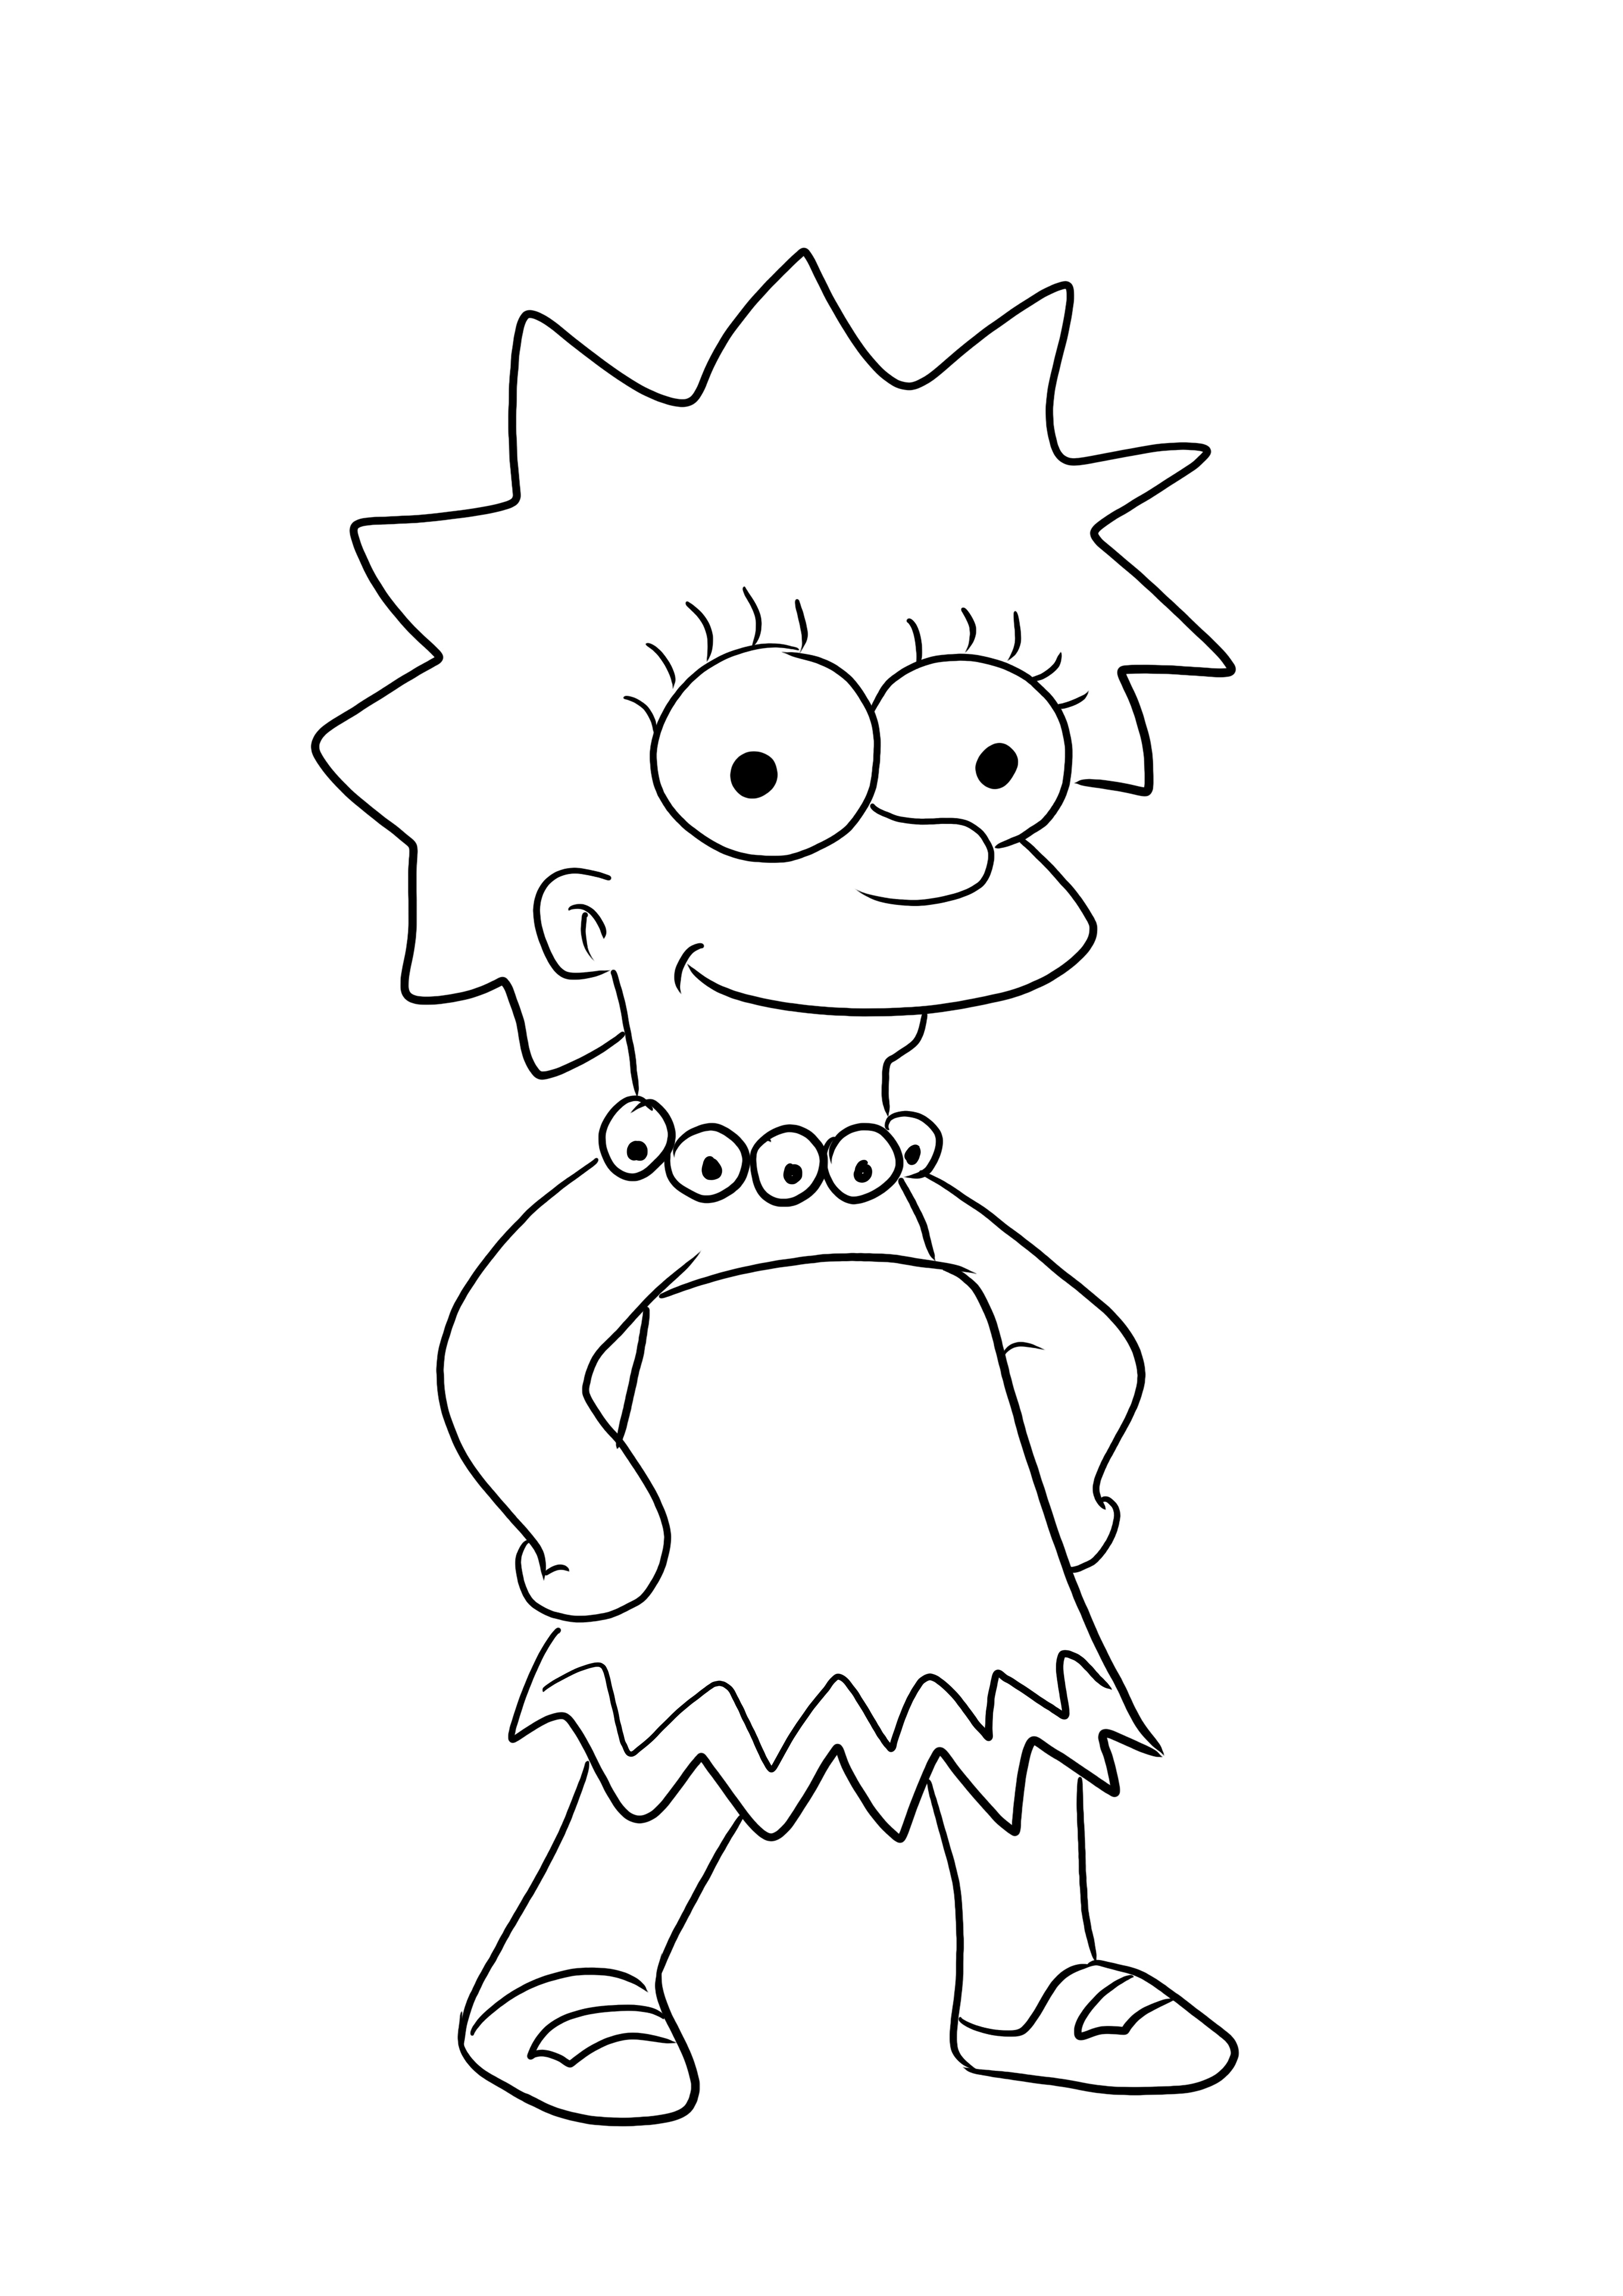 Aranyos Lisa Simpson színező kép ingyenesen letölthető vagy menthető későbbre